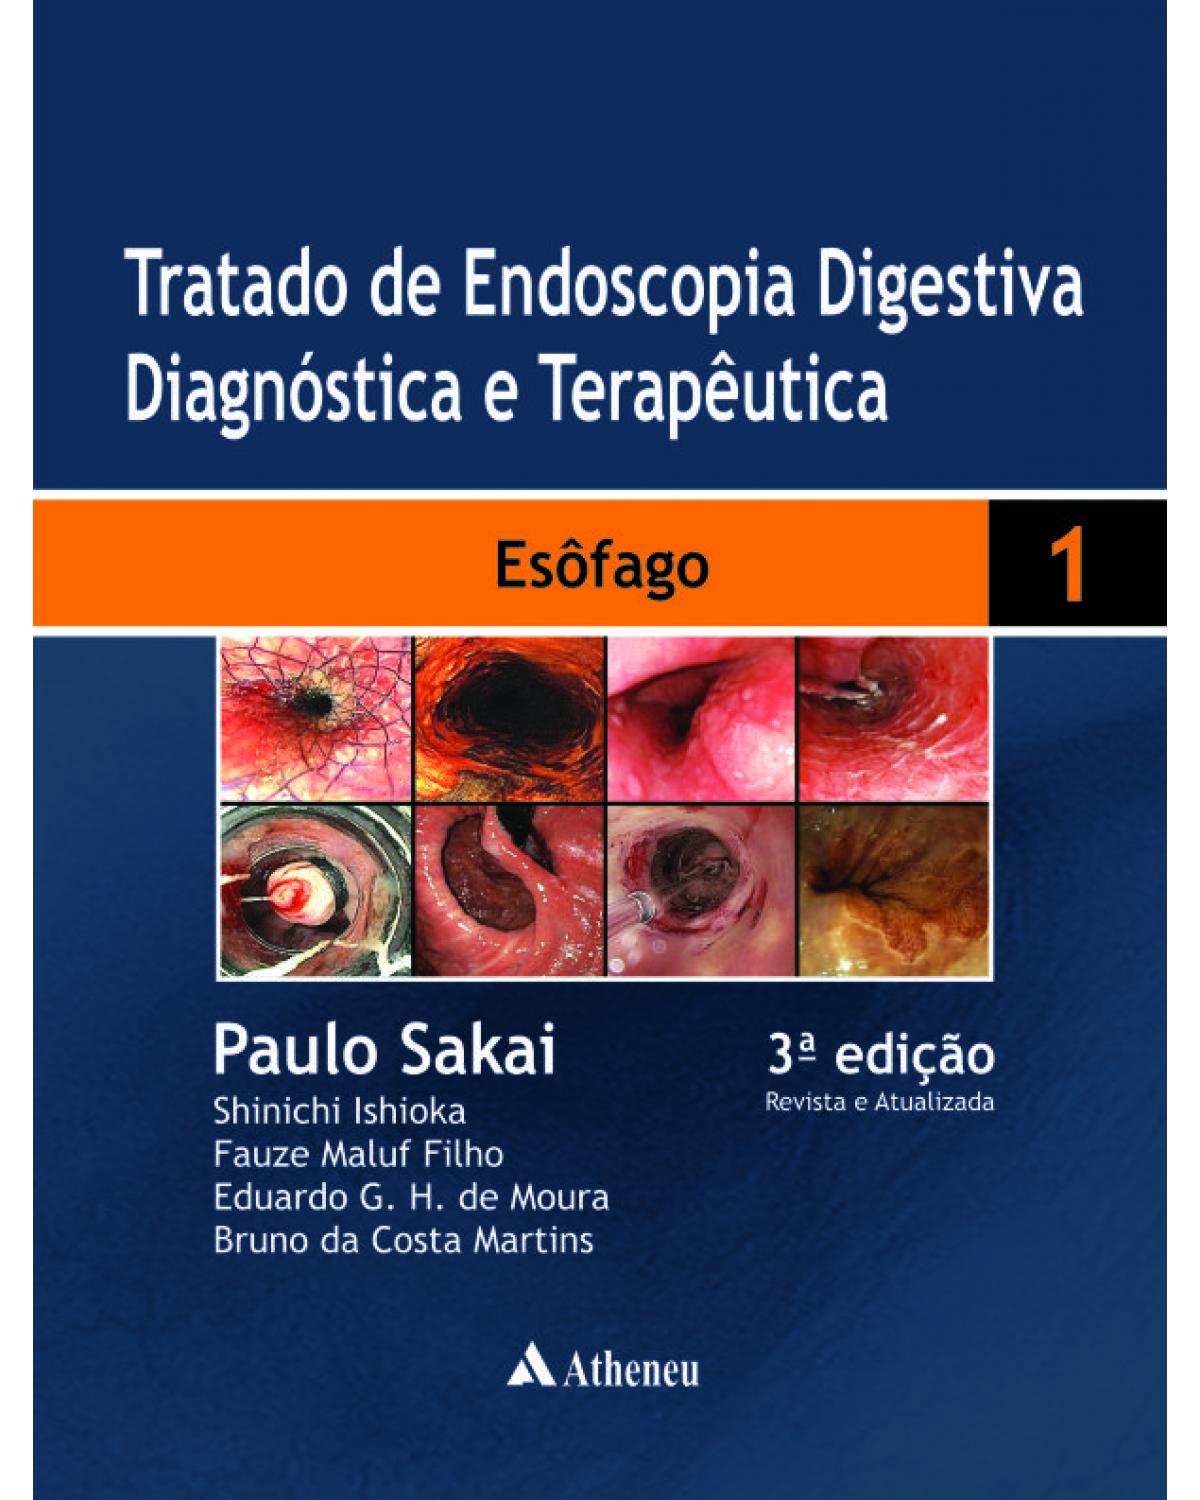 Tratado de endoscopia digestiva diagnóstica e terapêutica - Volume 1: esôfago - 3ª Edição | 2014